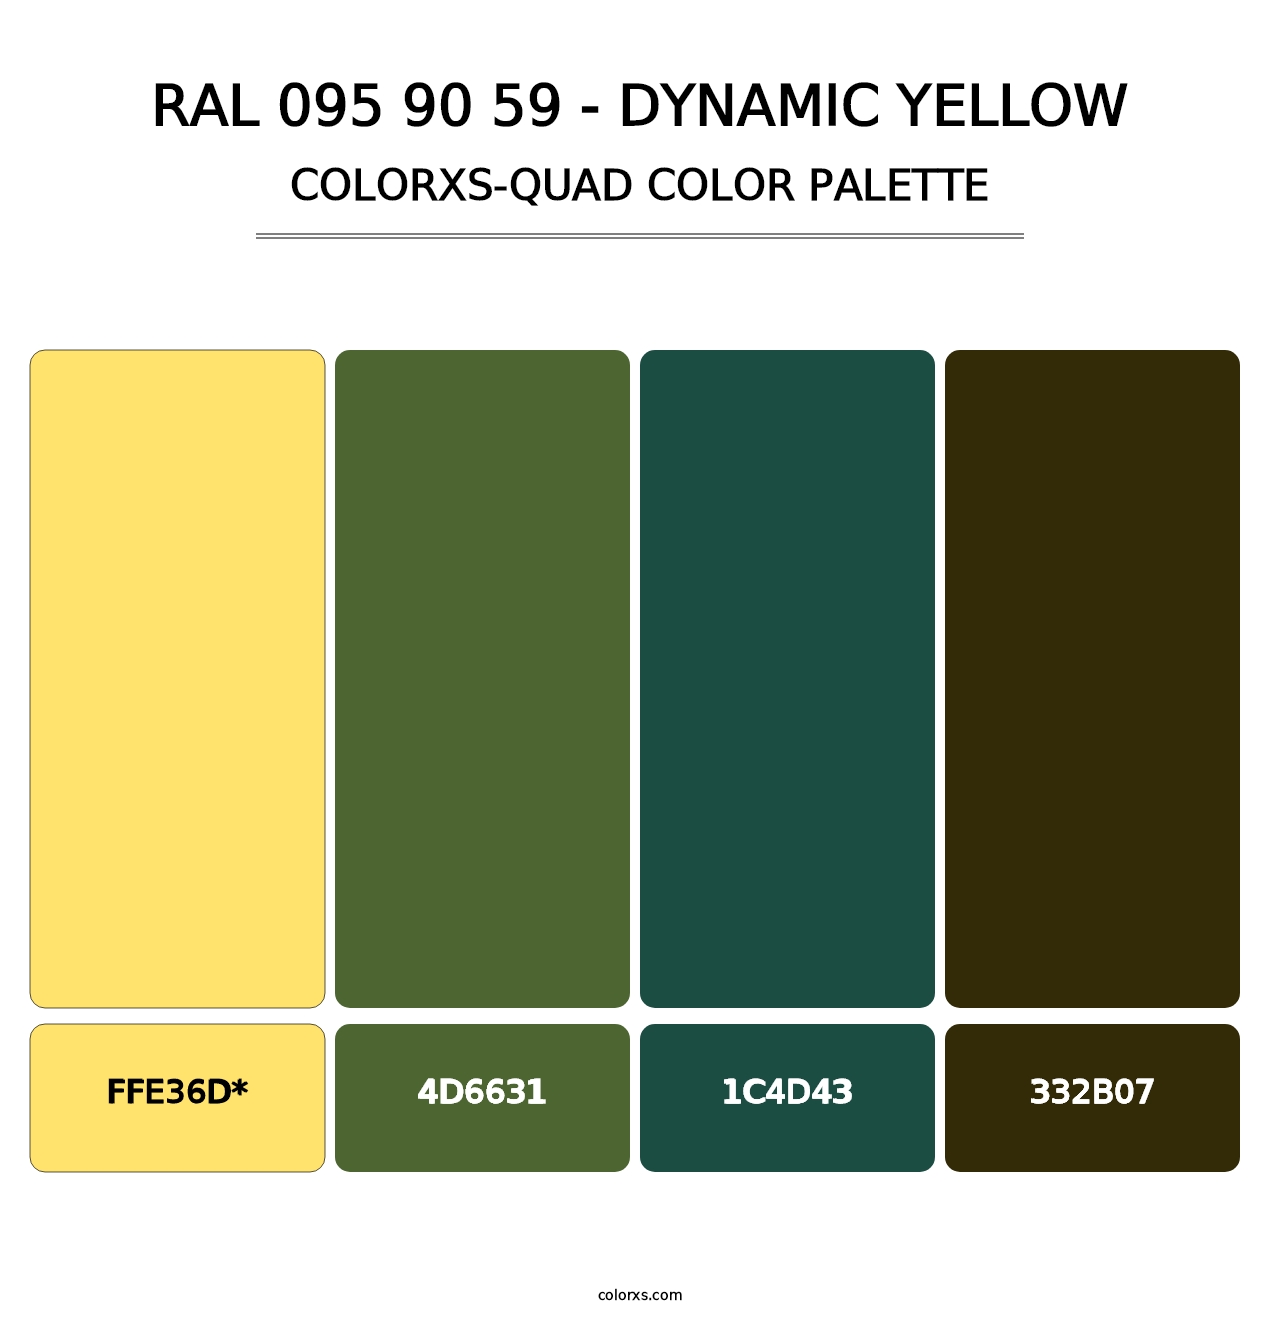 RAL 095 90 59 - Dynamic Yellow - Colorxs Quad Palette